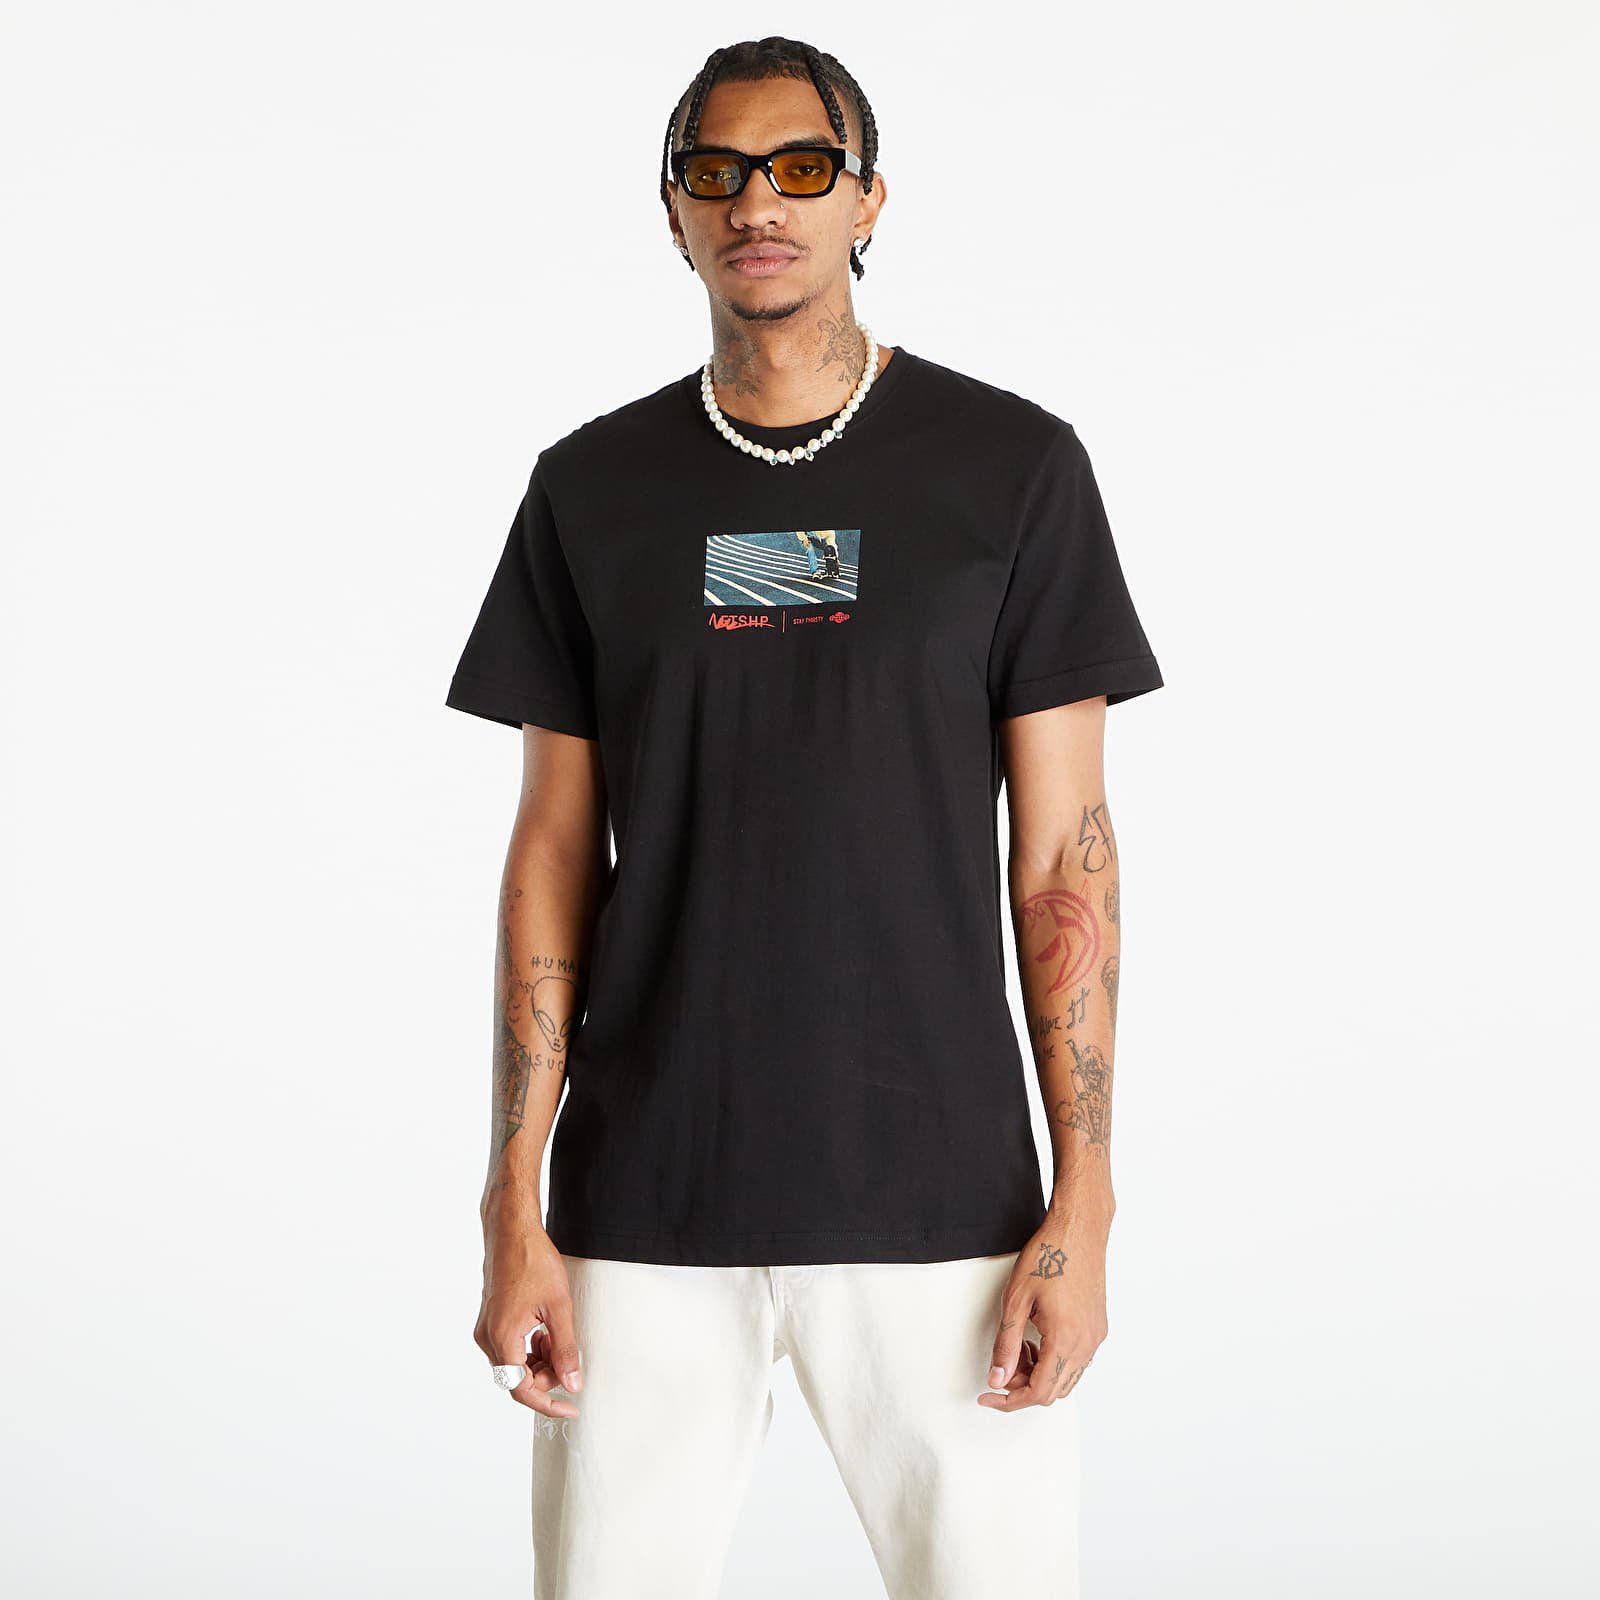 T-shirts Footshop Surfing Concrete Waves T-Shirt UNISEX Black